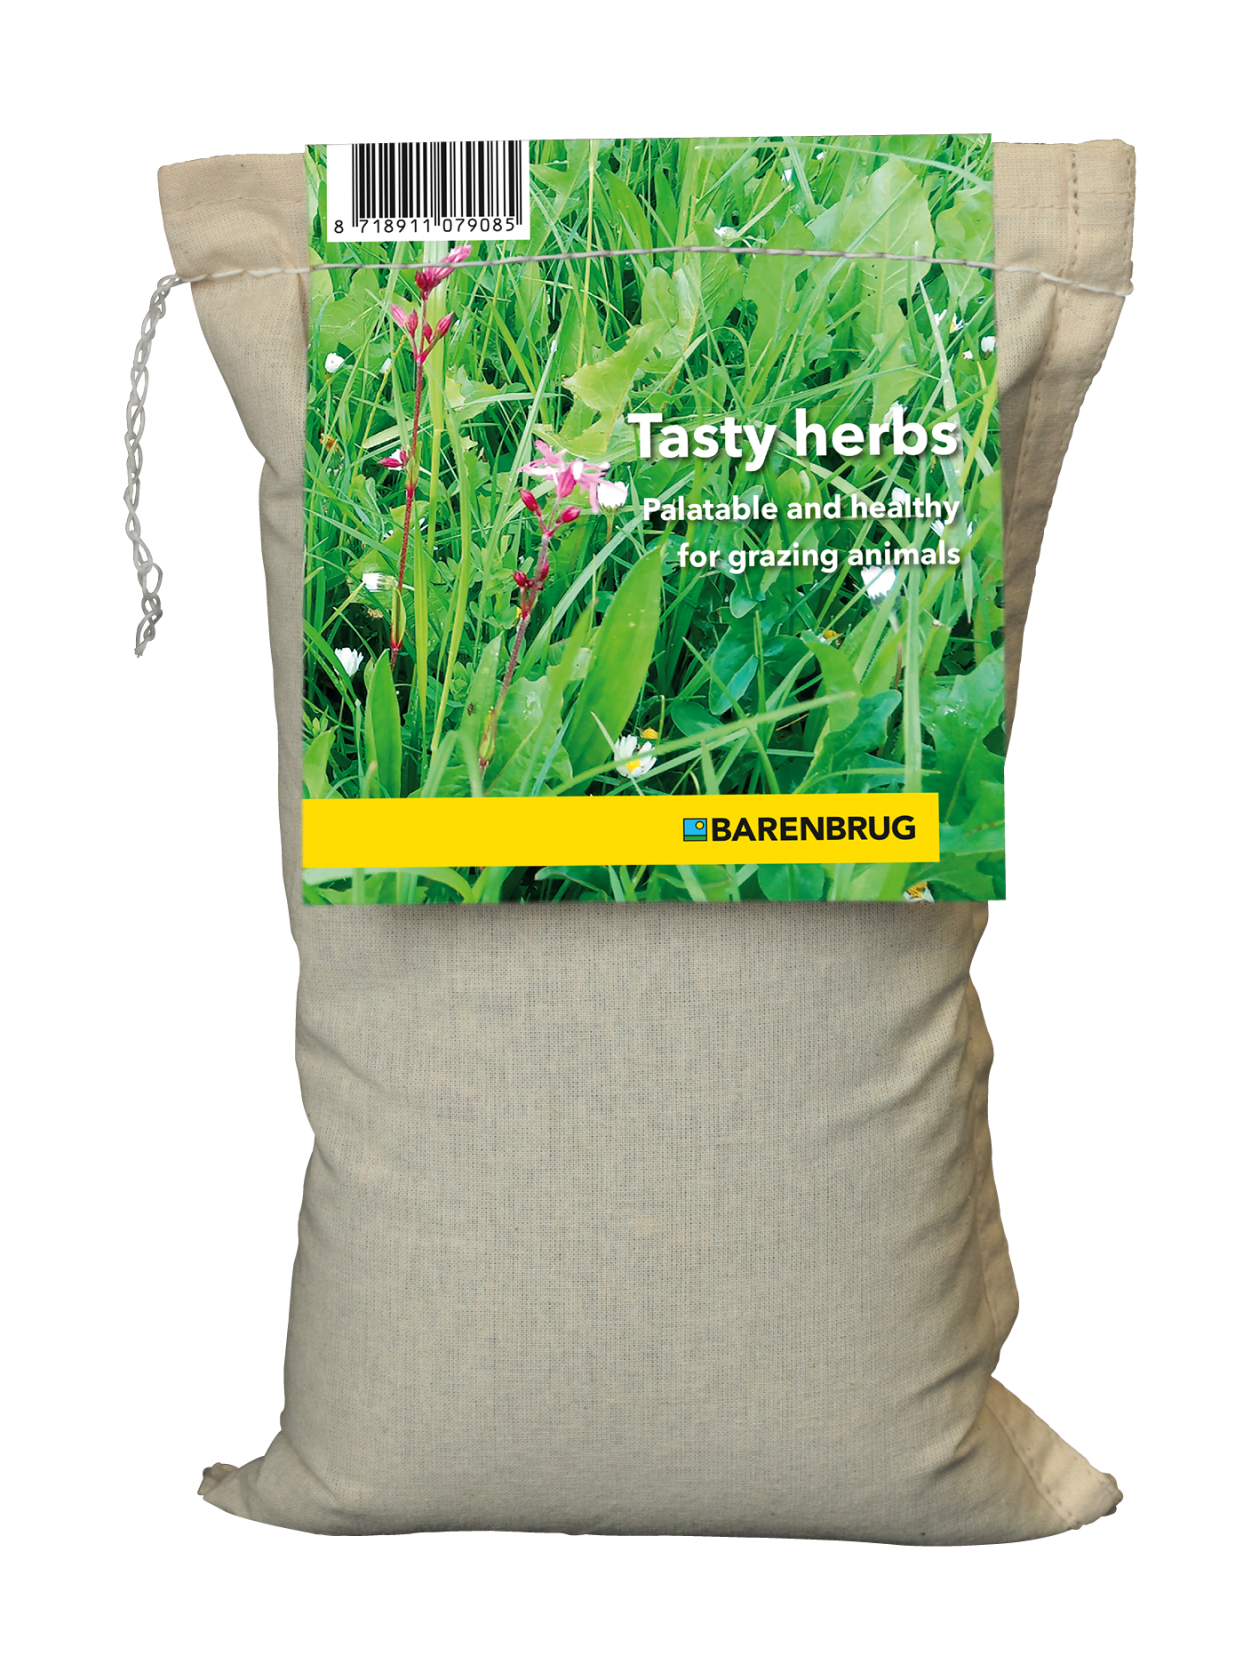 Barenbrug kruidenmengsel - Tasty Herbs - voor paarden, runderen en kleinvee - inzaaibaar met gras of puur - 1kg